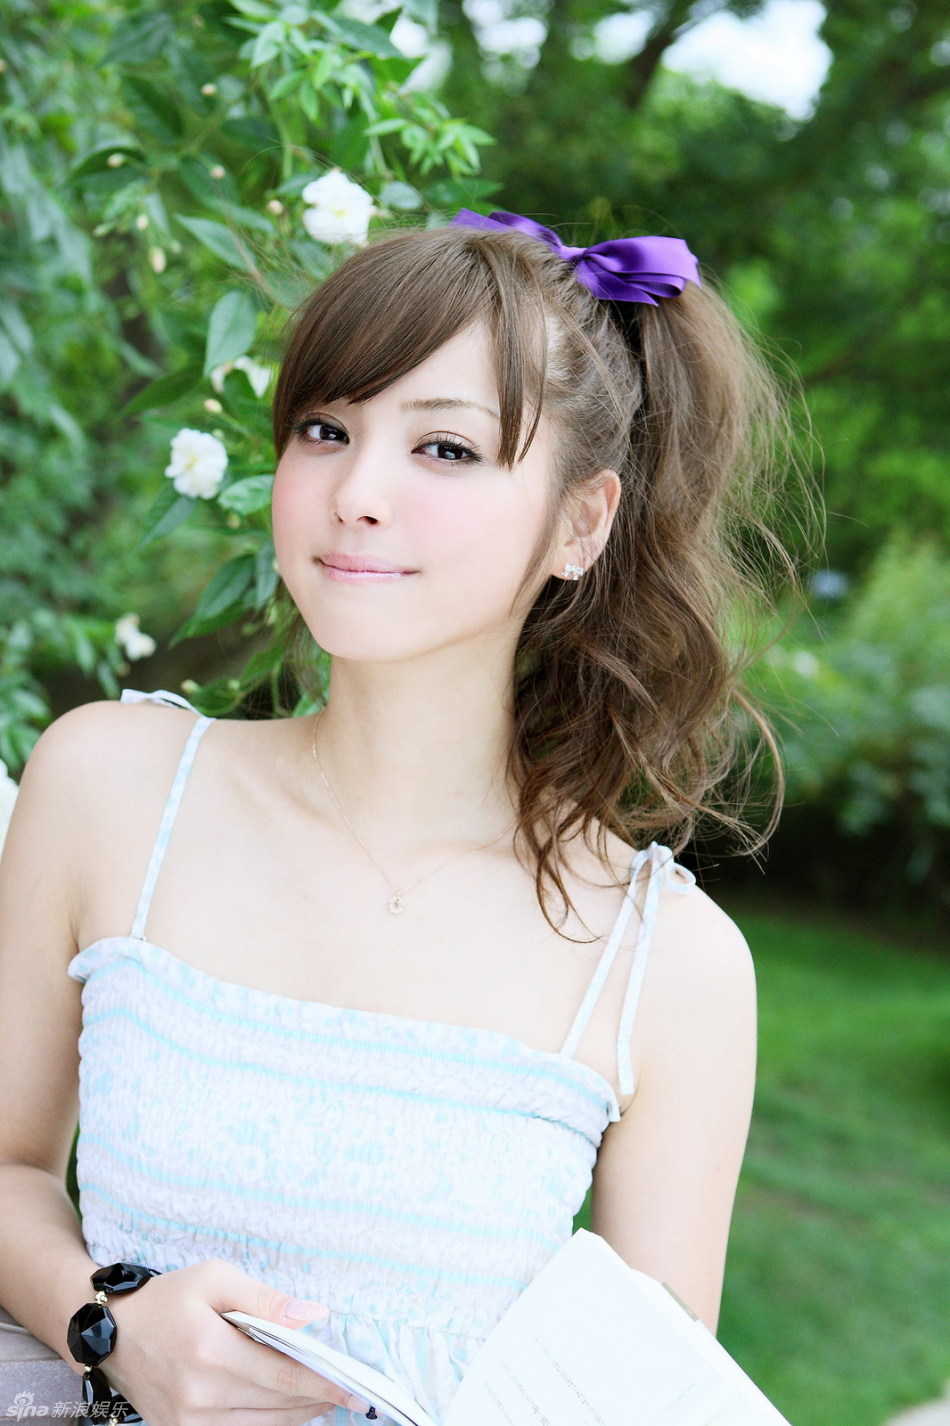 日本靓模佐木木希写真 清纯甜美 (24) 娱乐 人民网